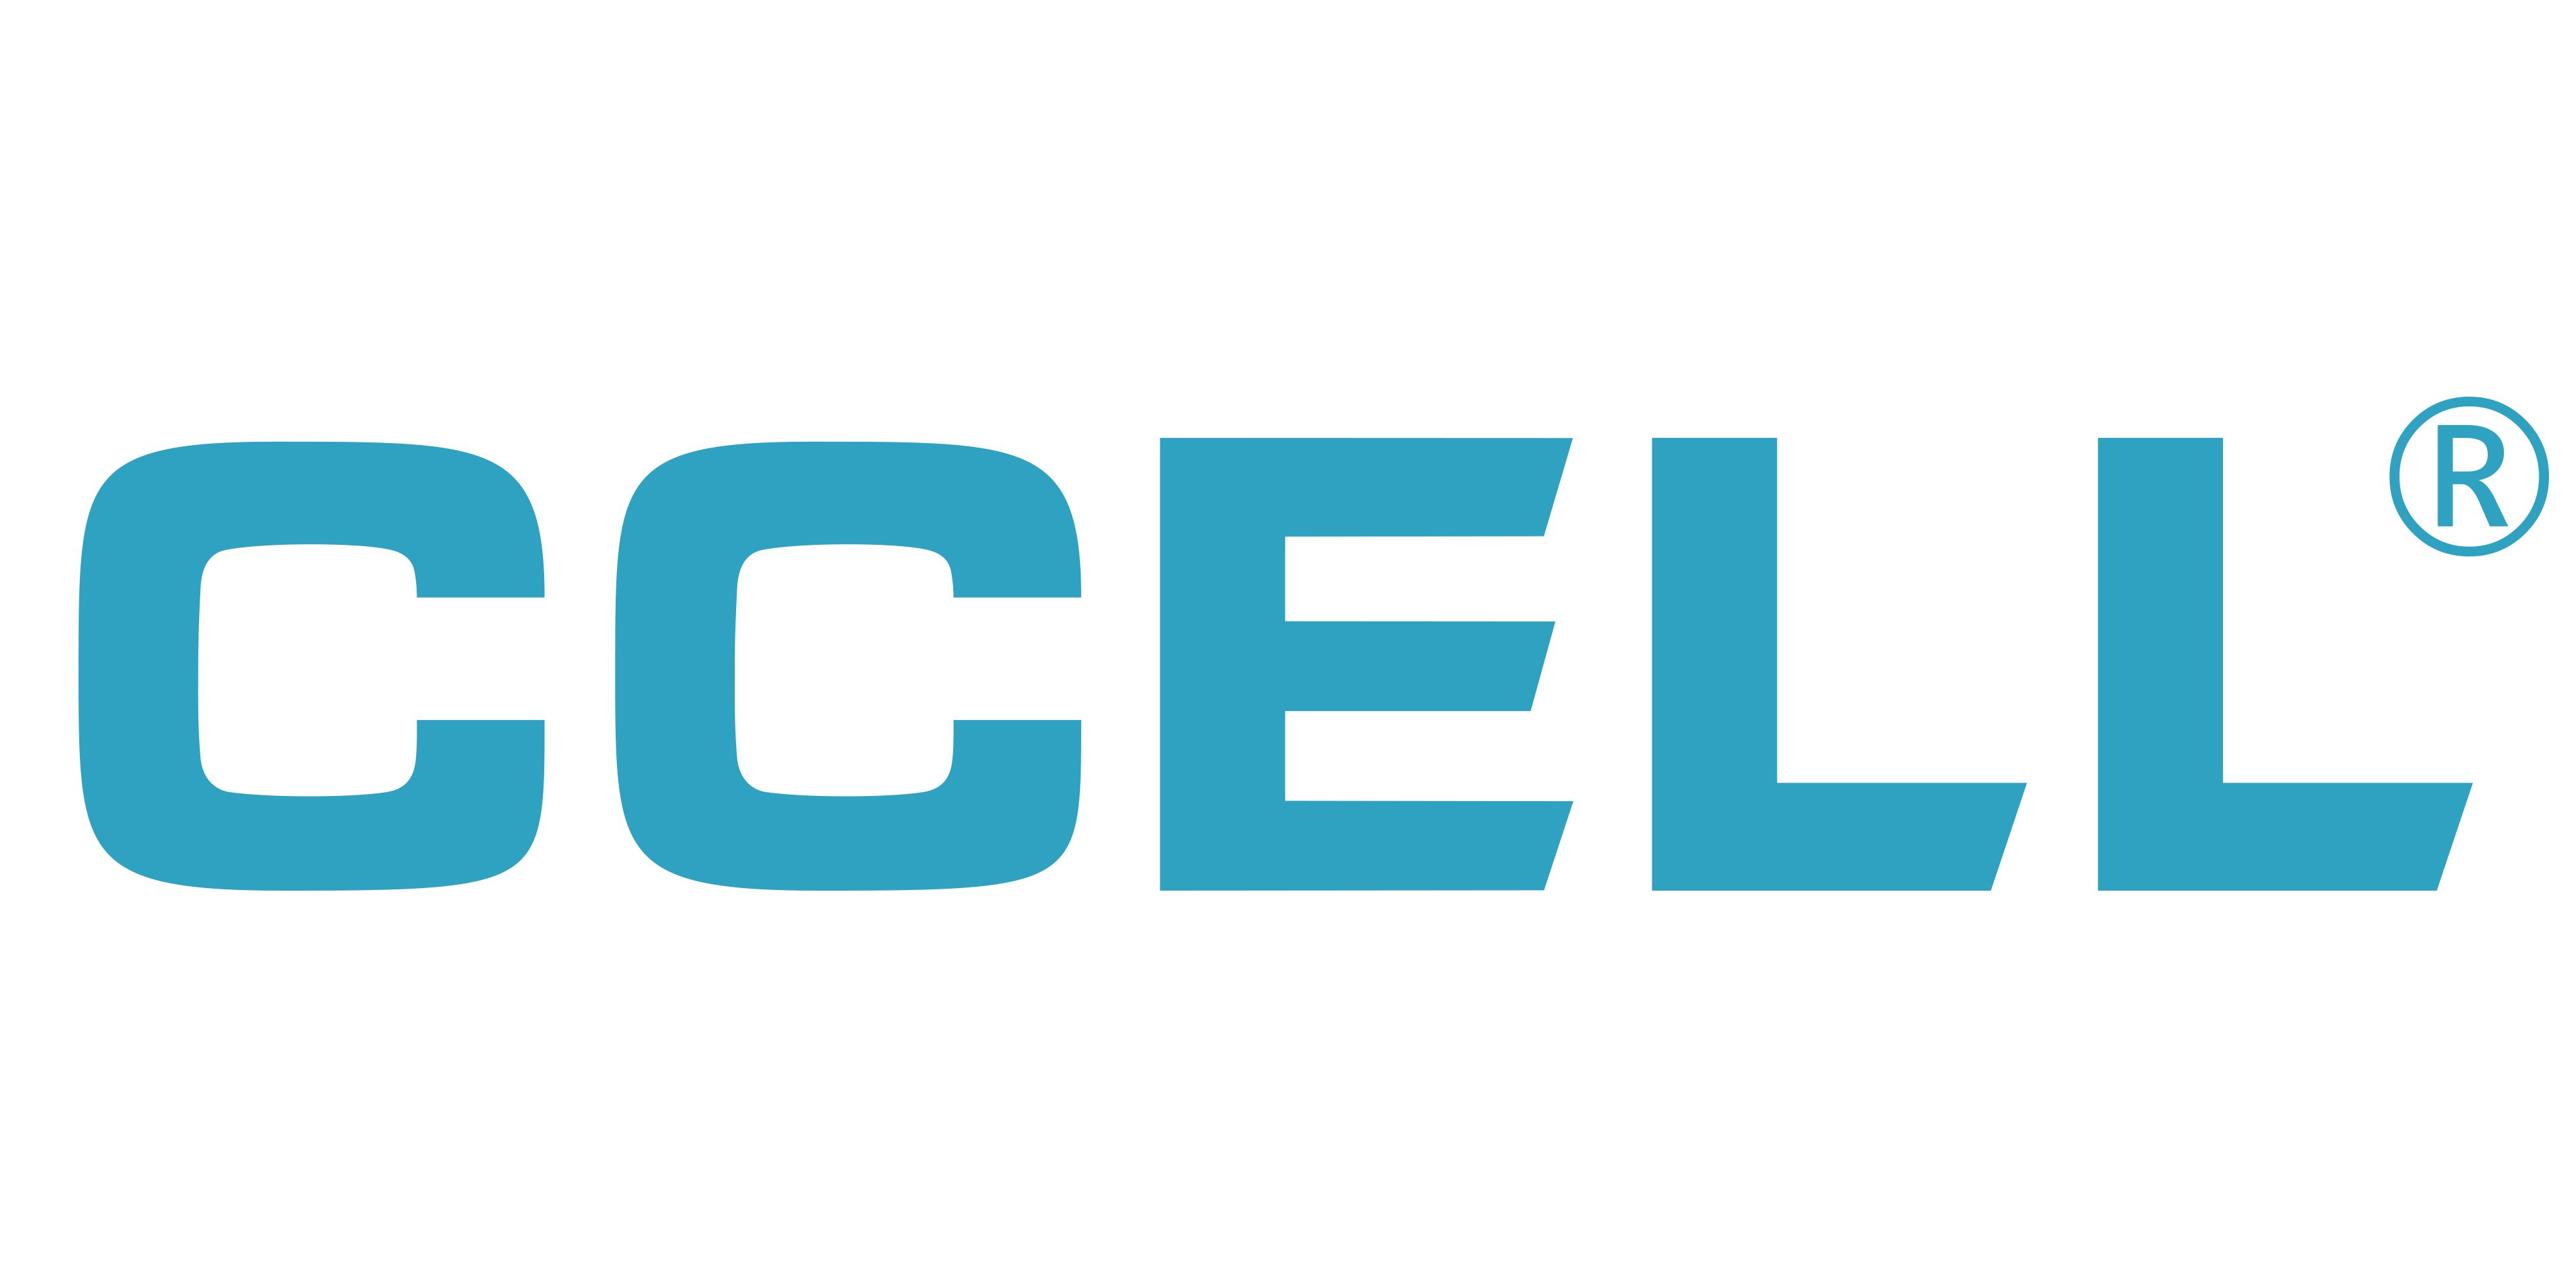 CCEL_Industry Stage Partner_927